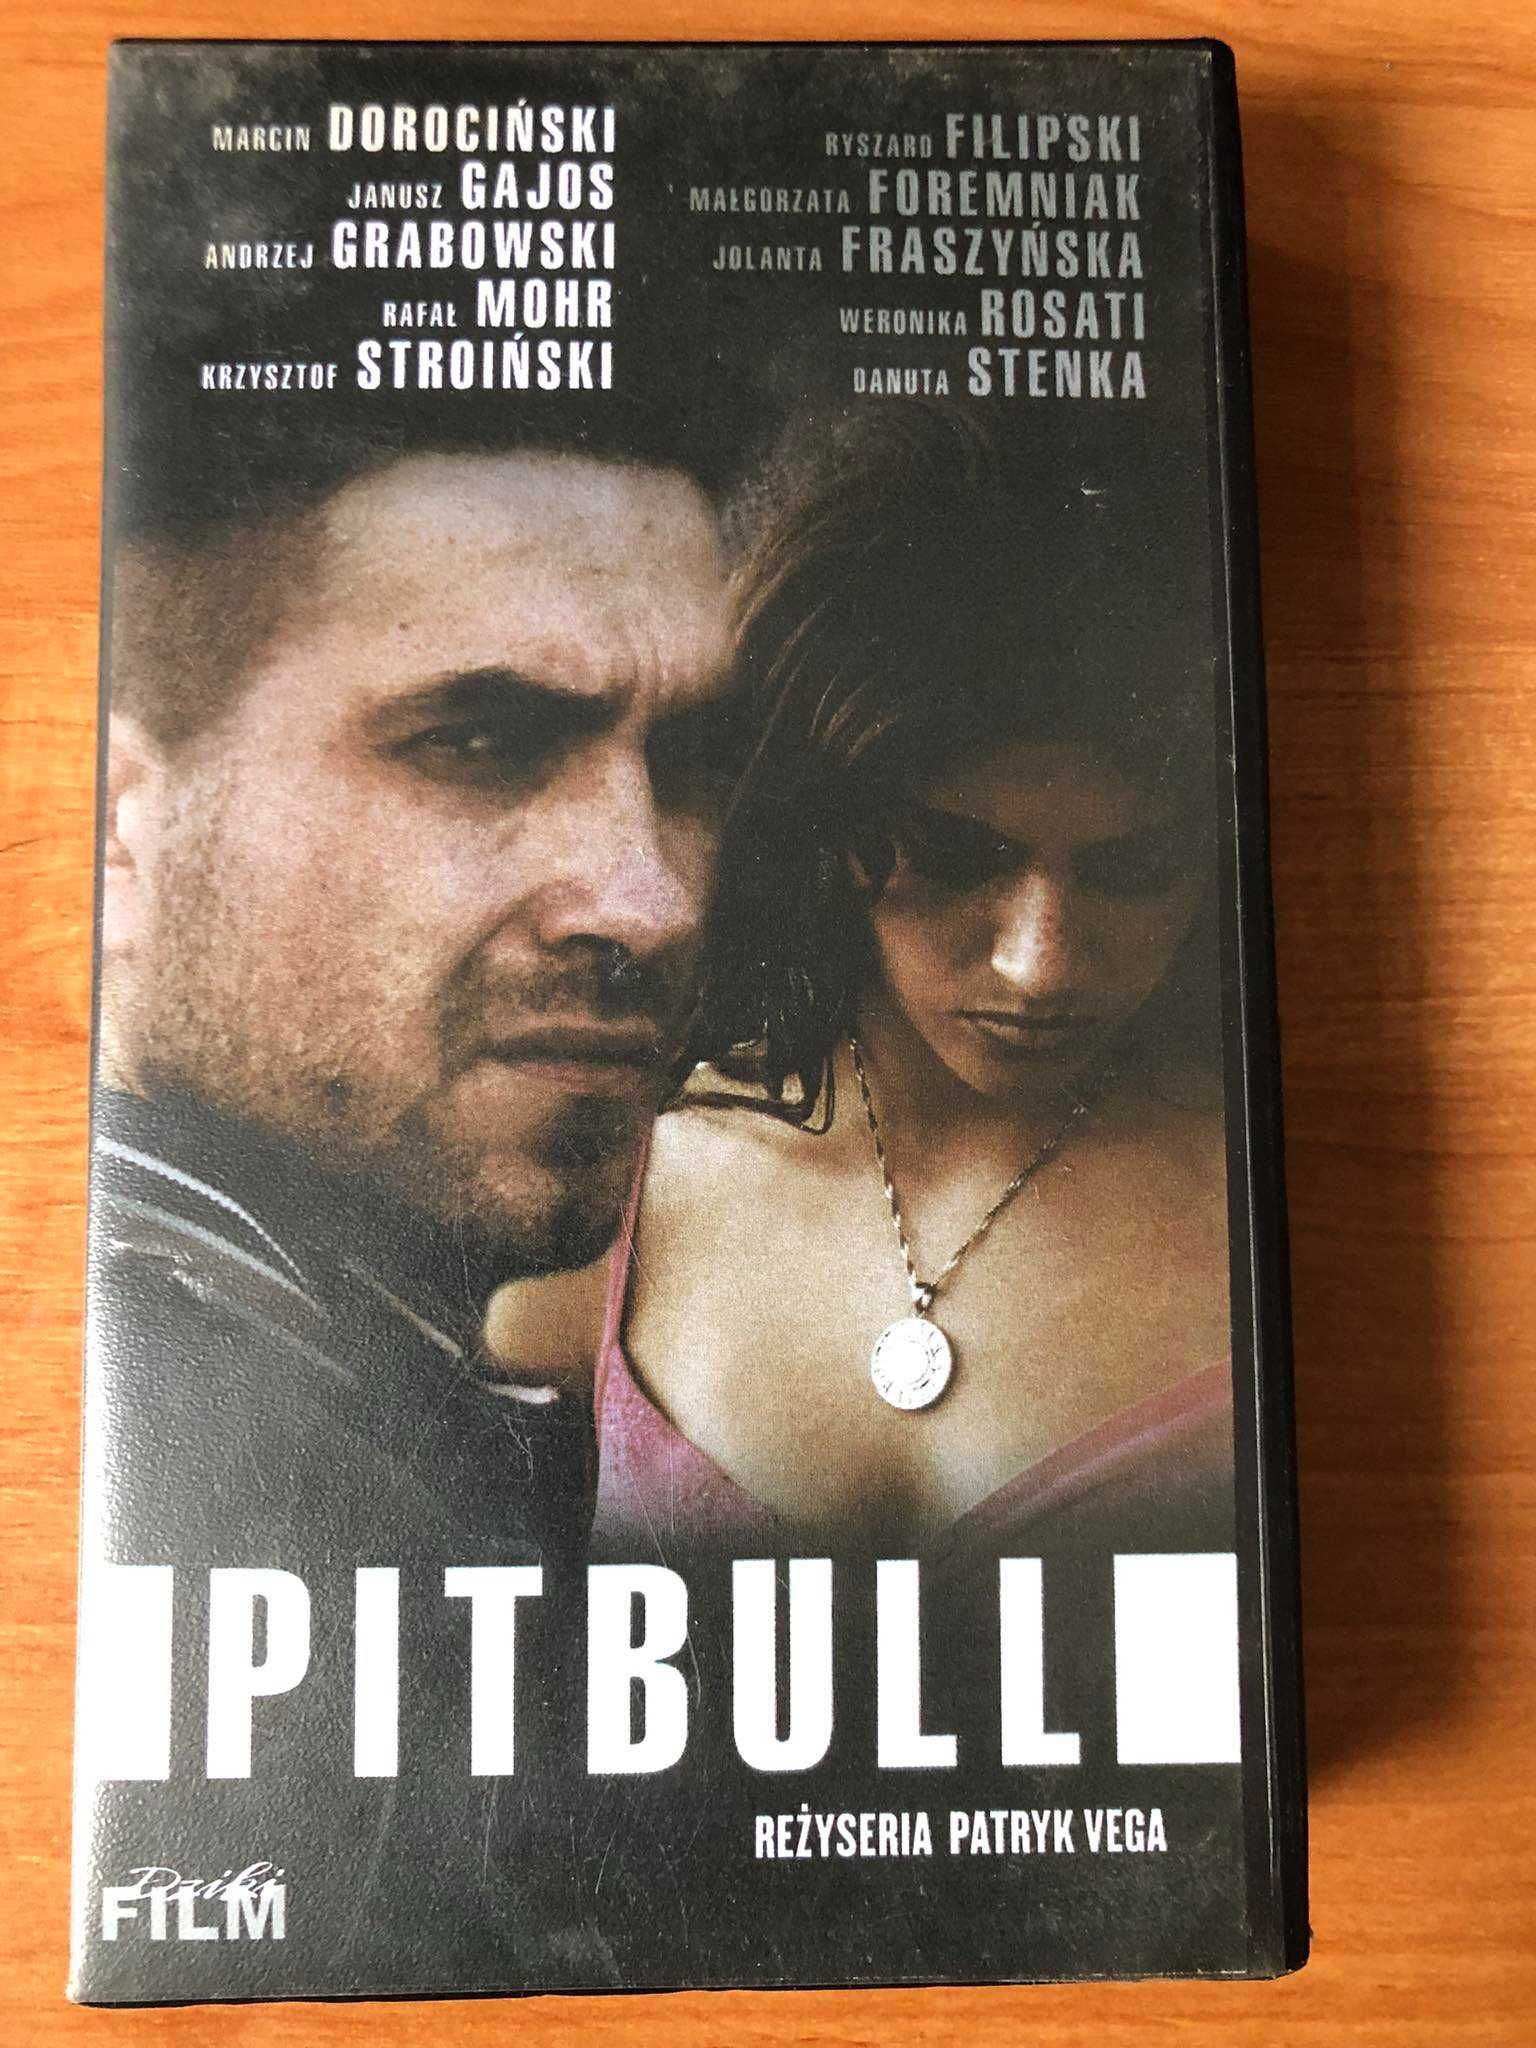 Film Pitbull VHS , stan bardzo dobry